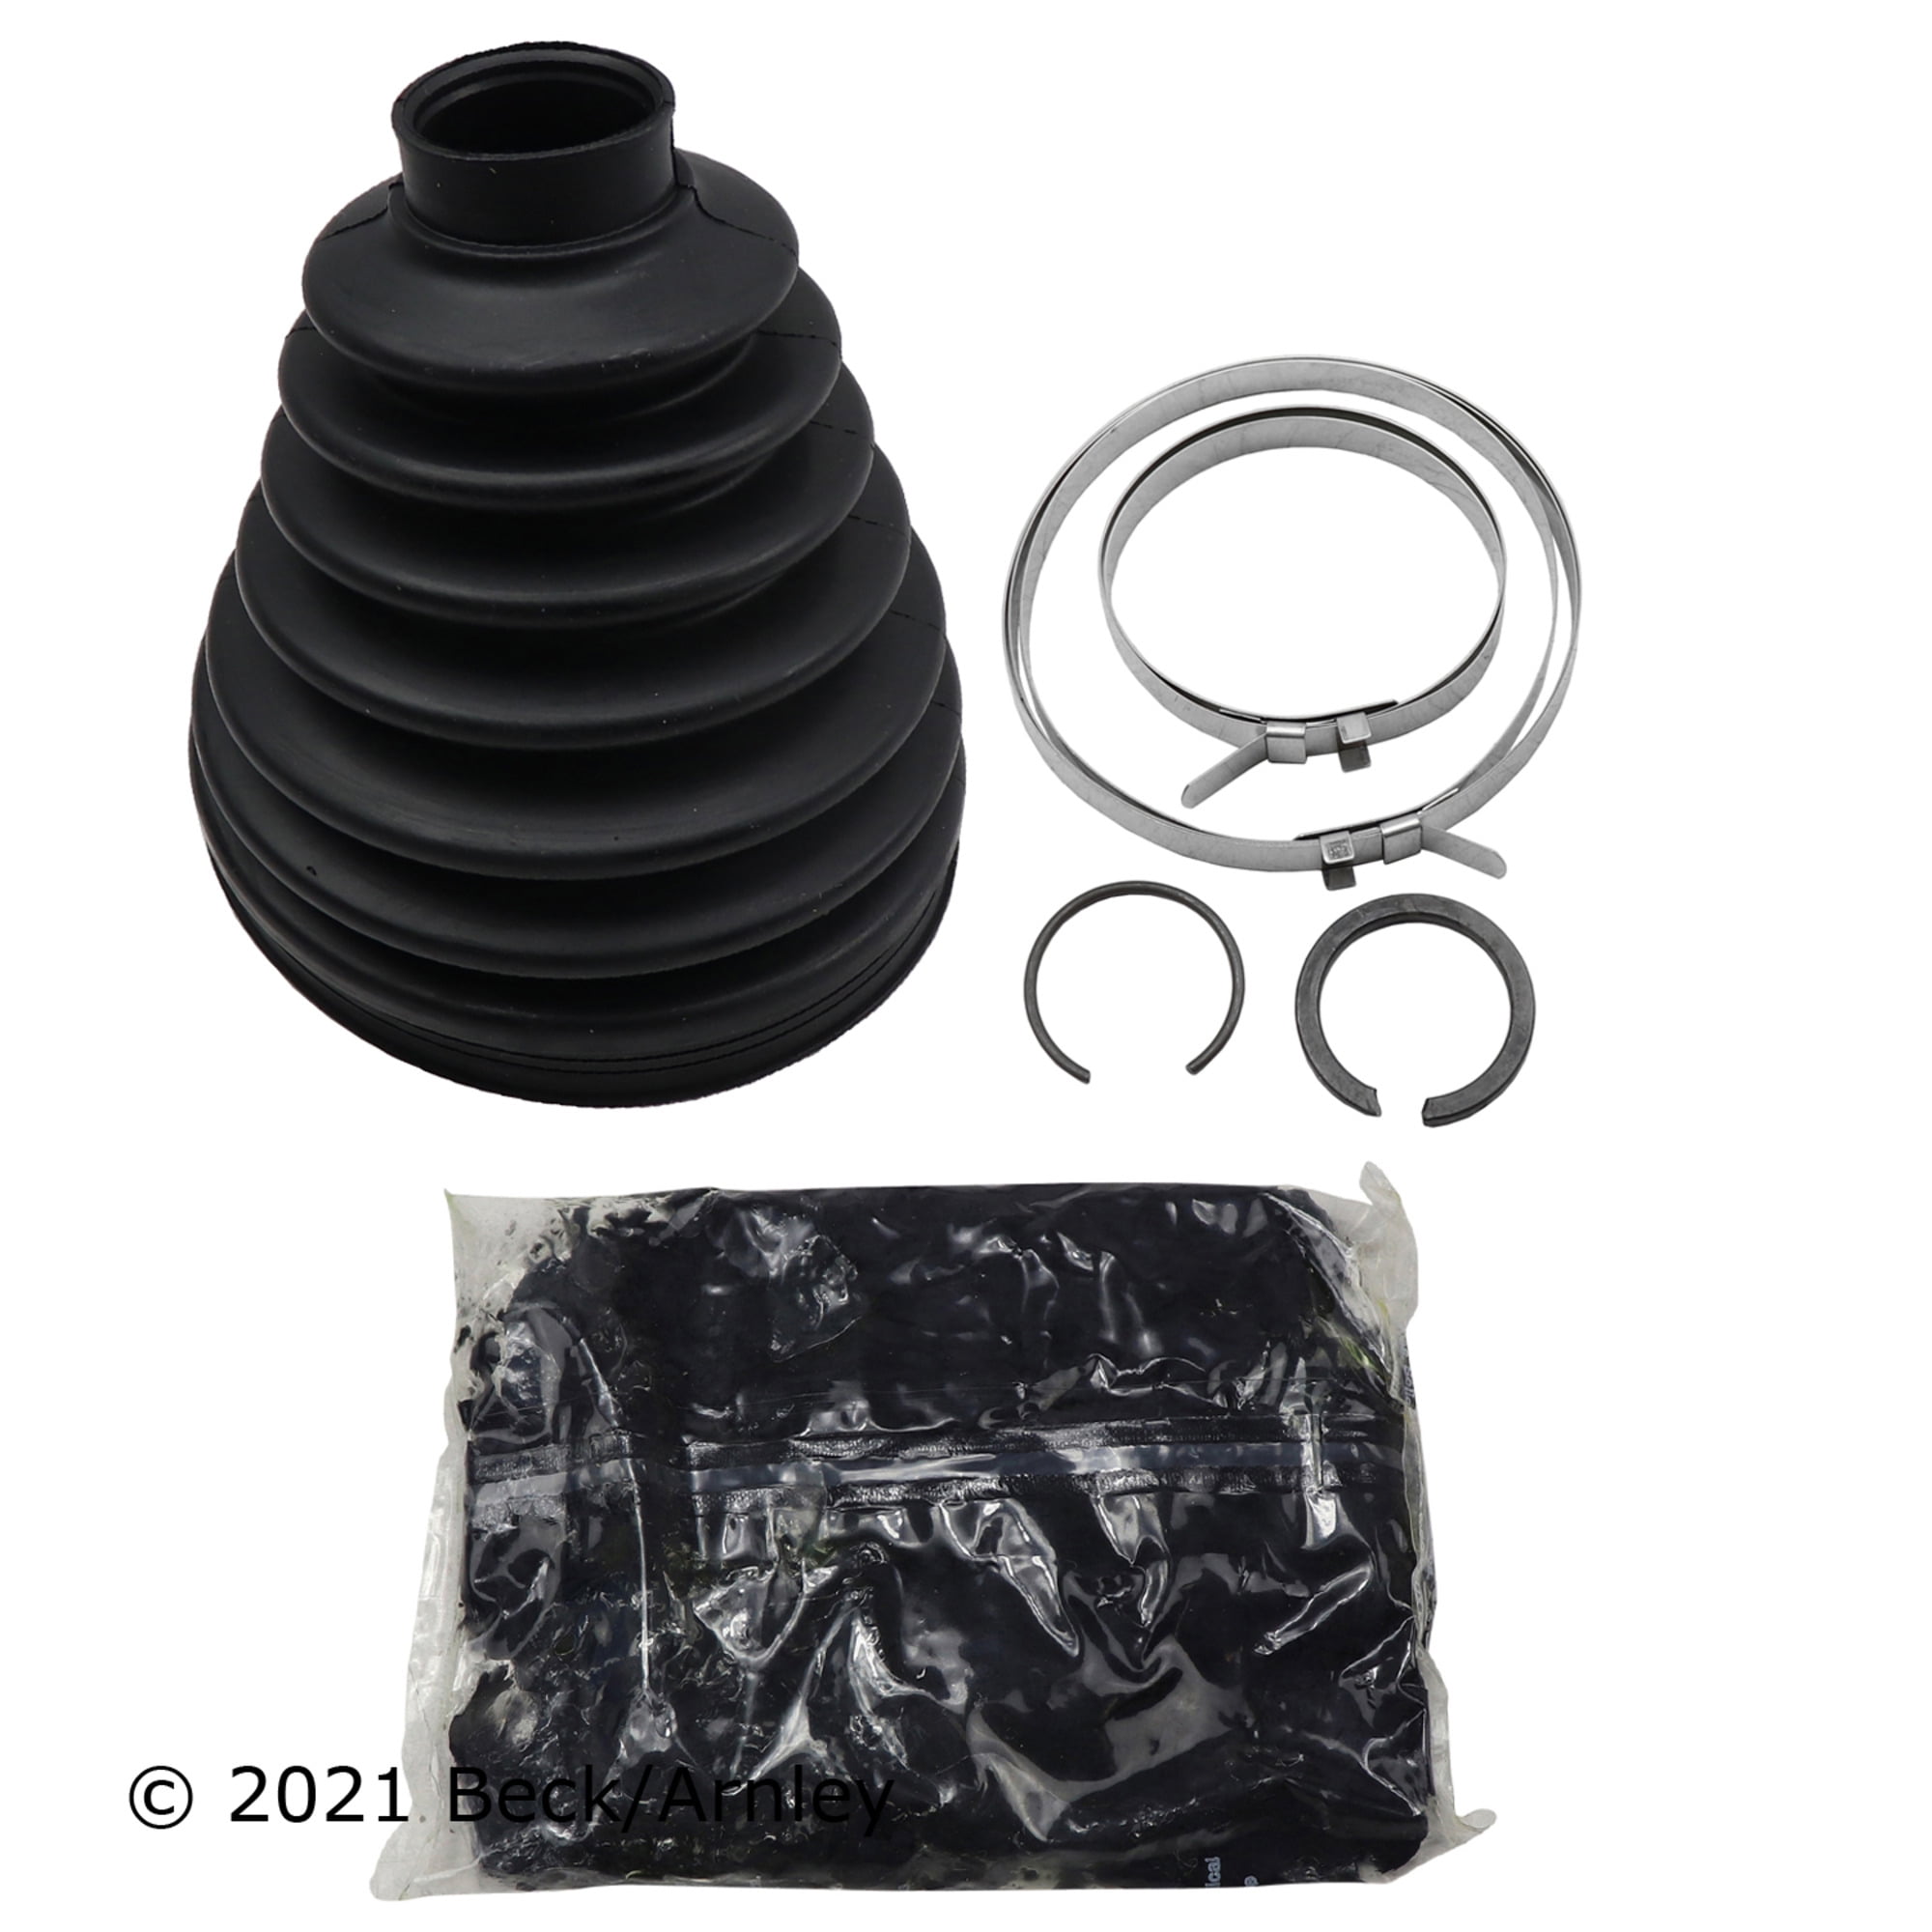 Dorman 03613 CV Joint Boot Kit for Specific Nissan / Toyota Models